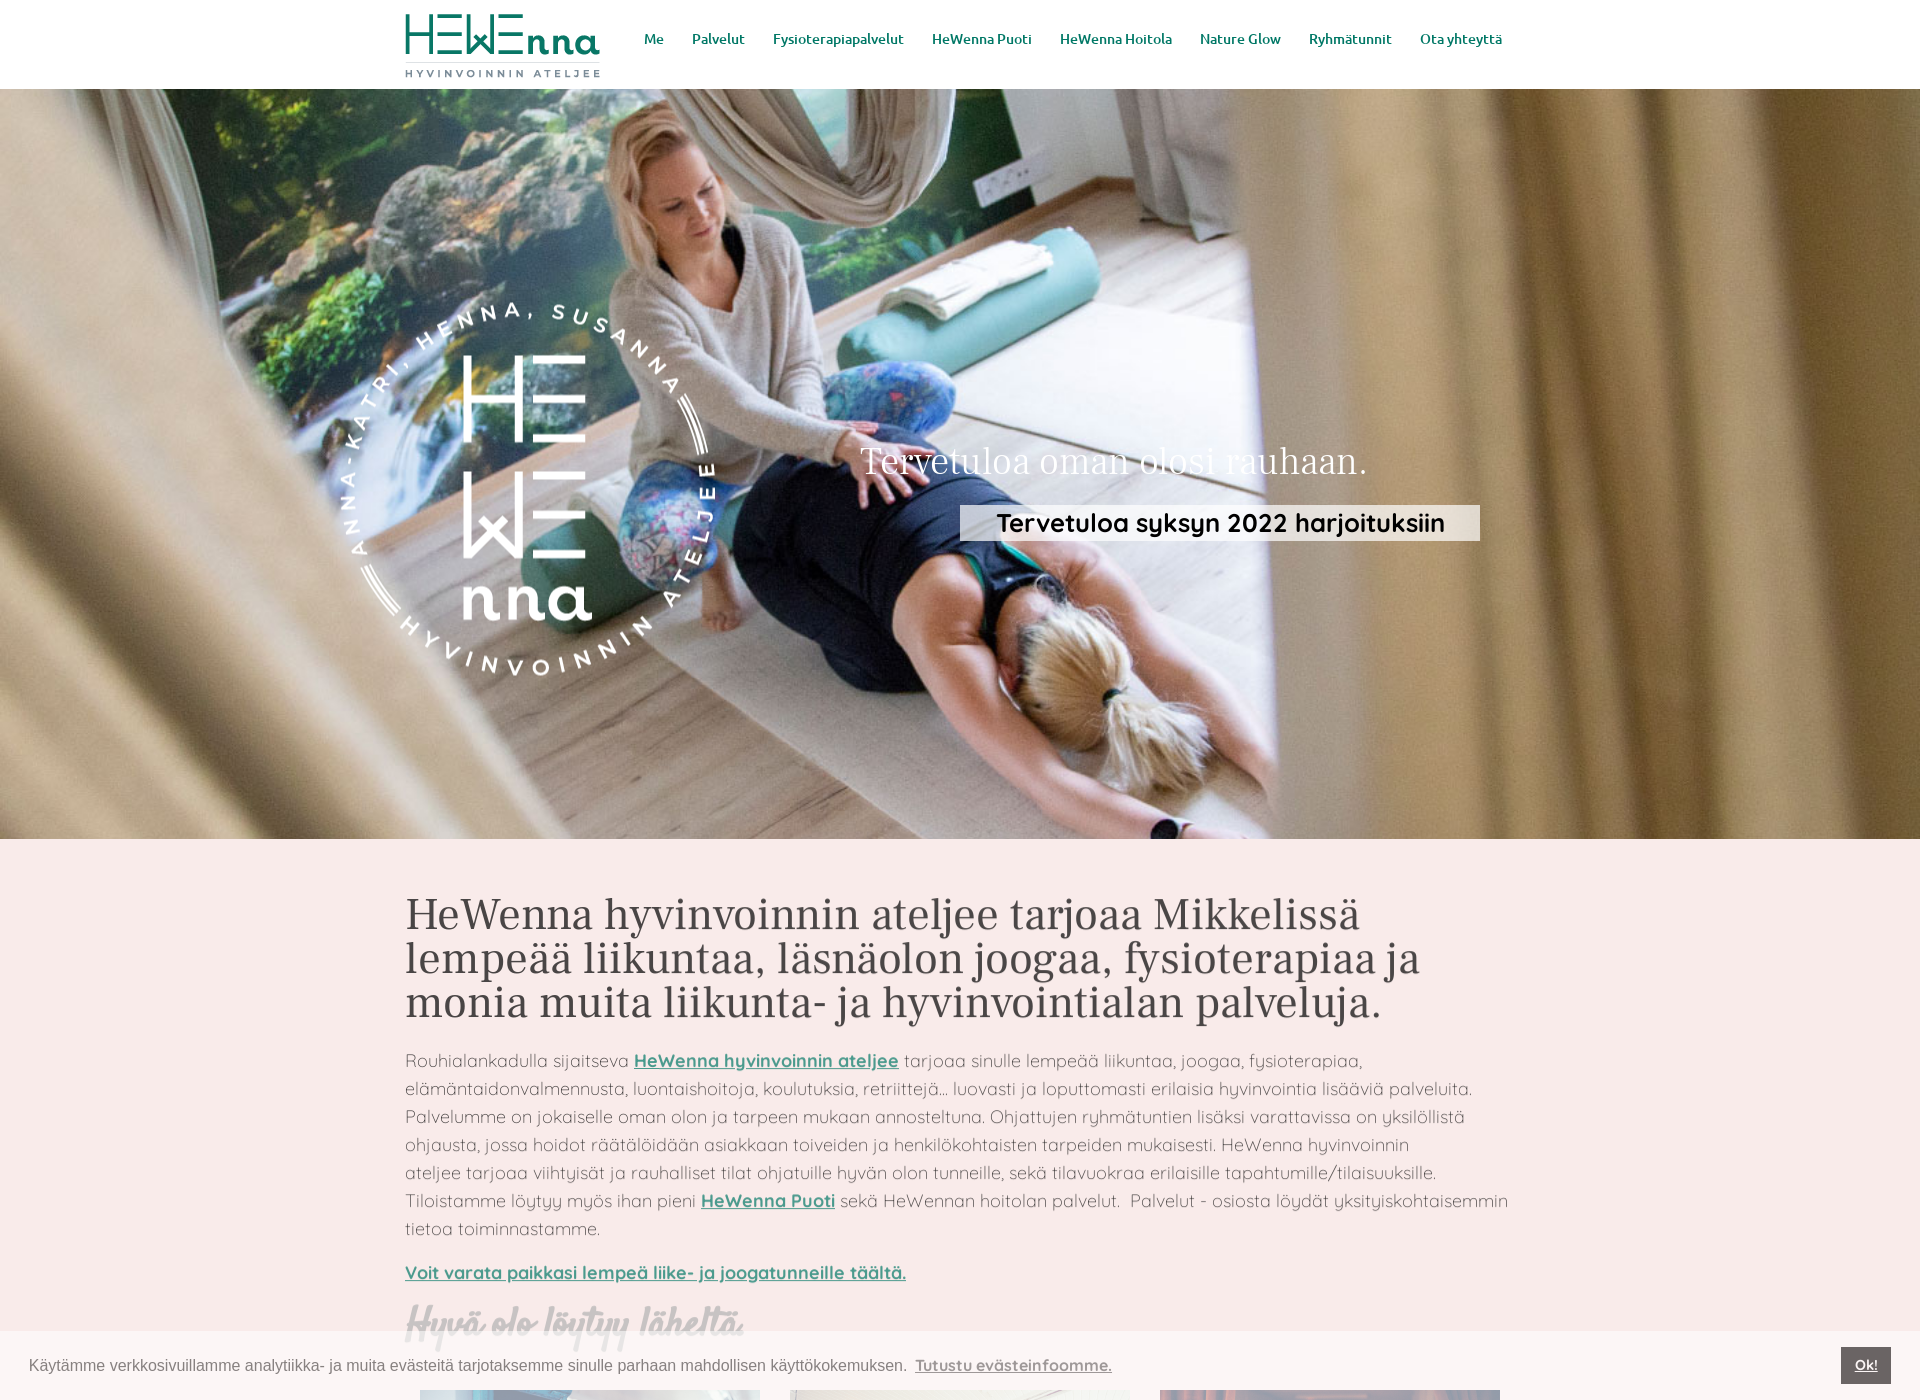 Näyttökuva hewenna.fi